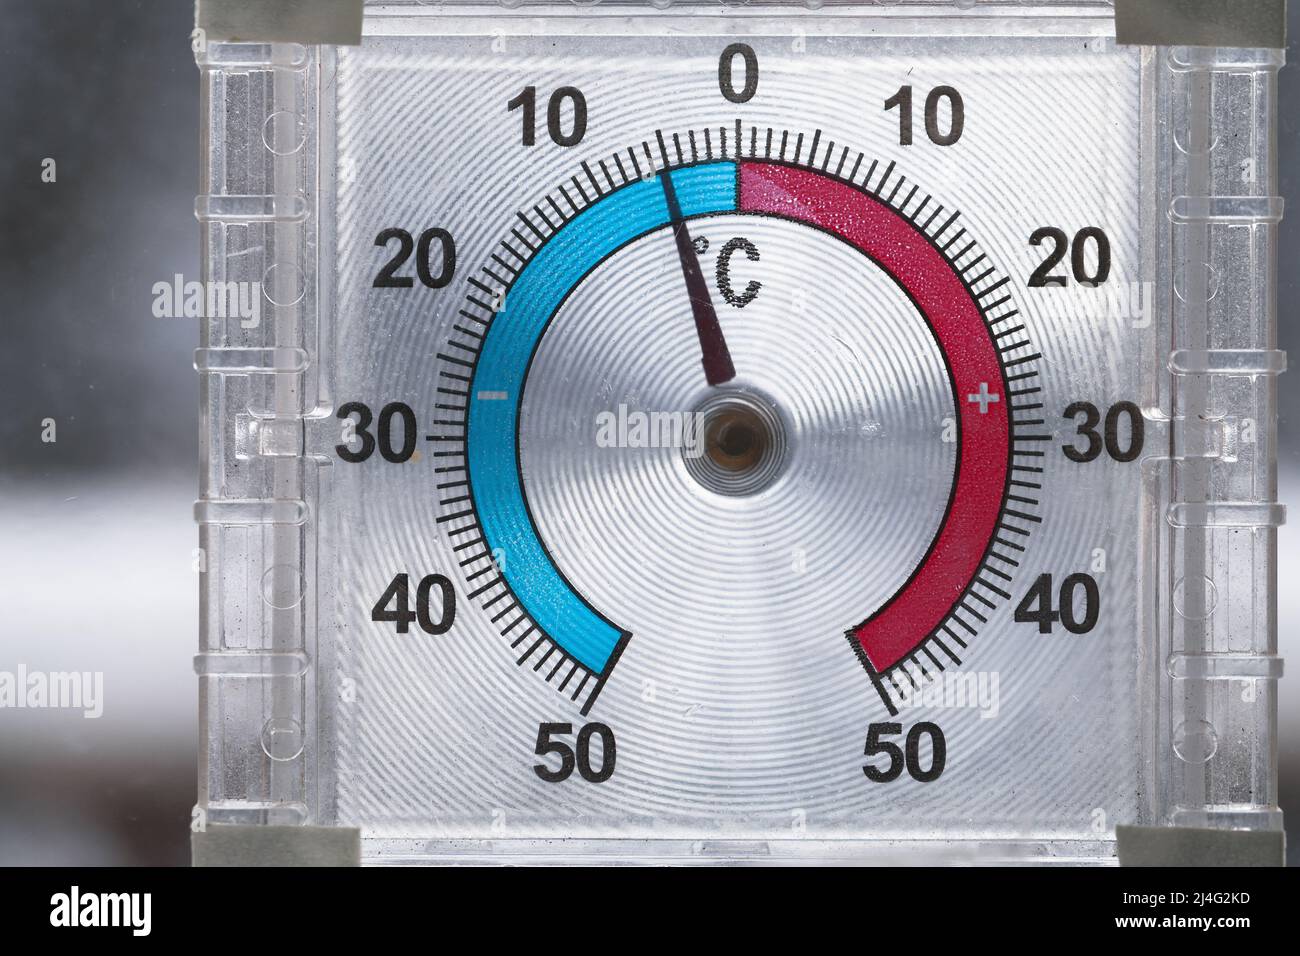 El termómetro para ventanas exteriores muestra una temperatura negativa en grados Celsius. Foto de primer plano con enfoque selectivo Foto de stock